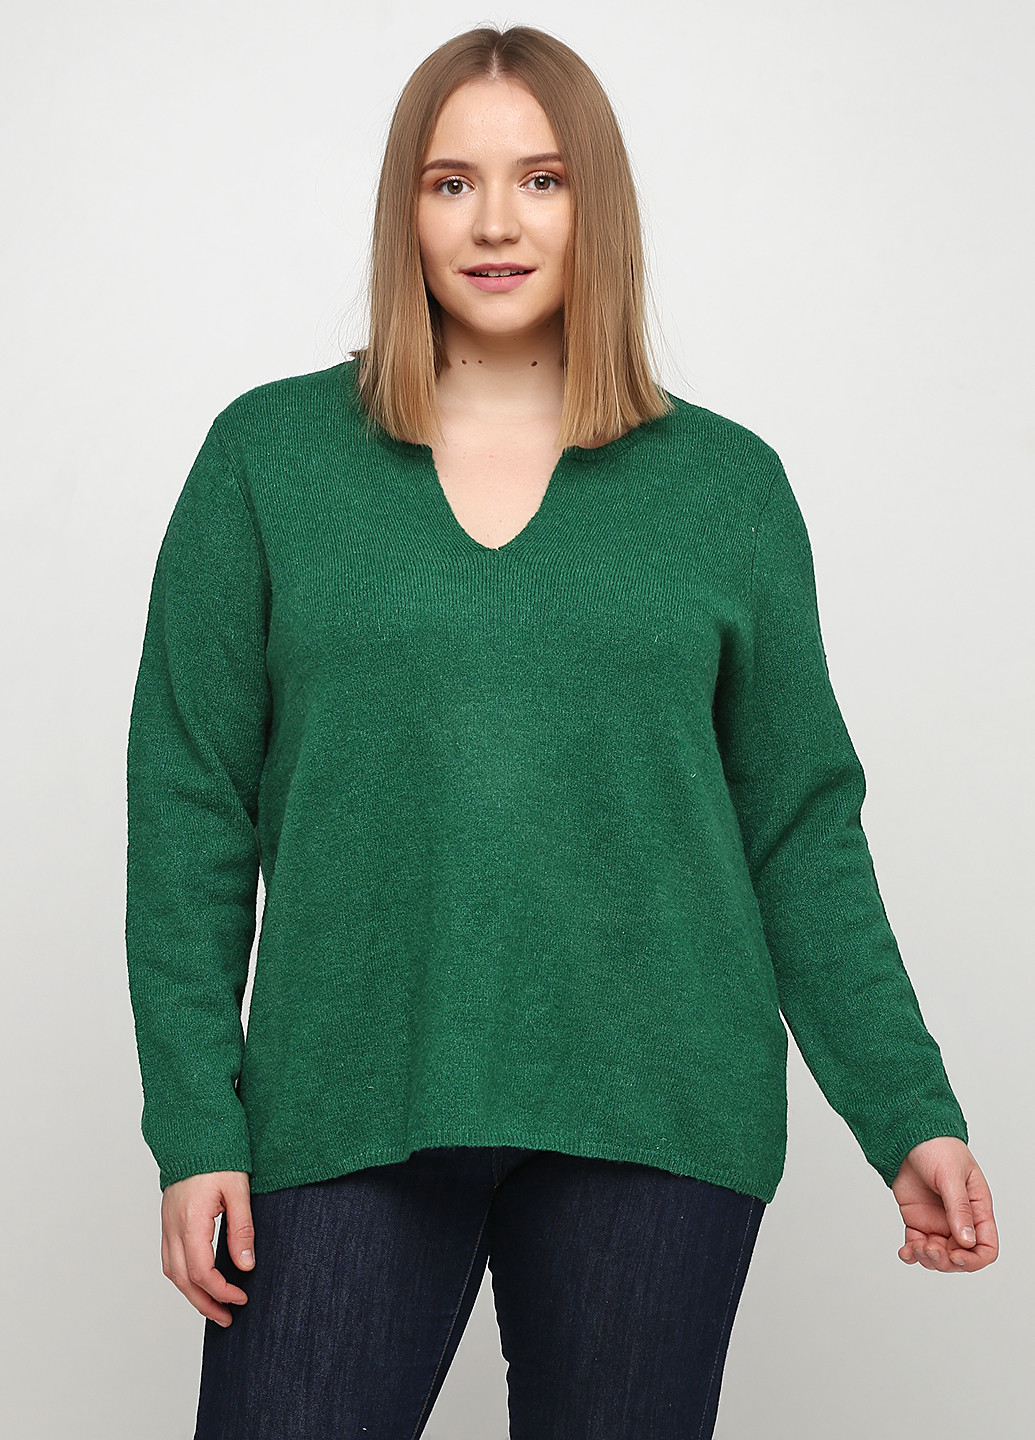 Зеленый демисезонный пуловер пуловер CHD